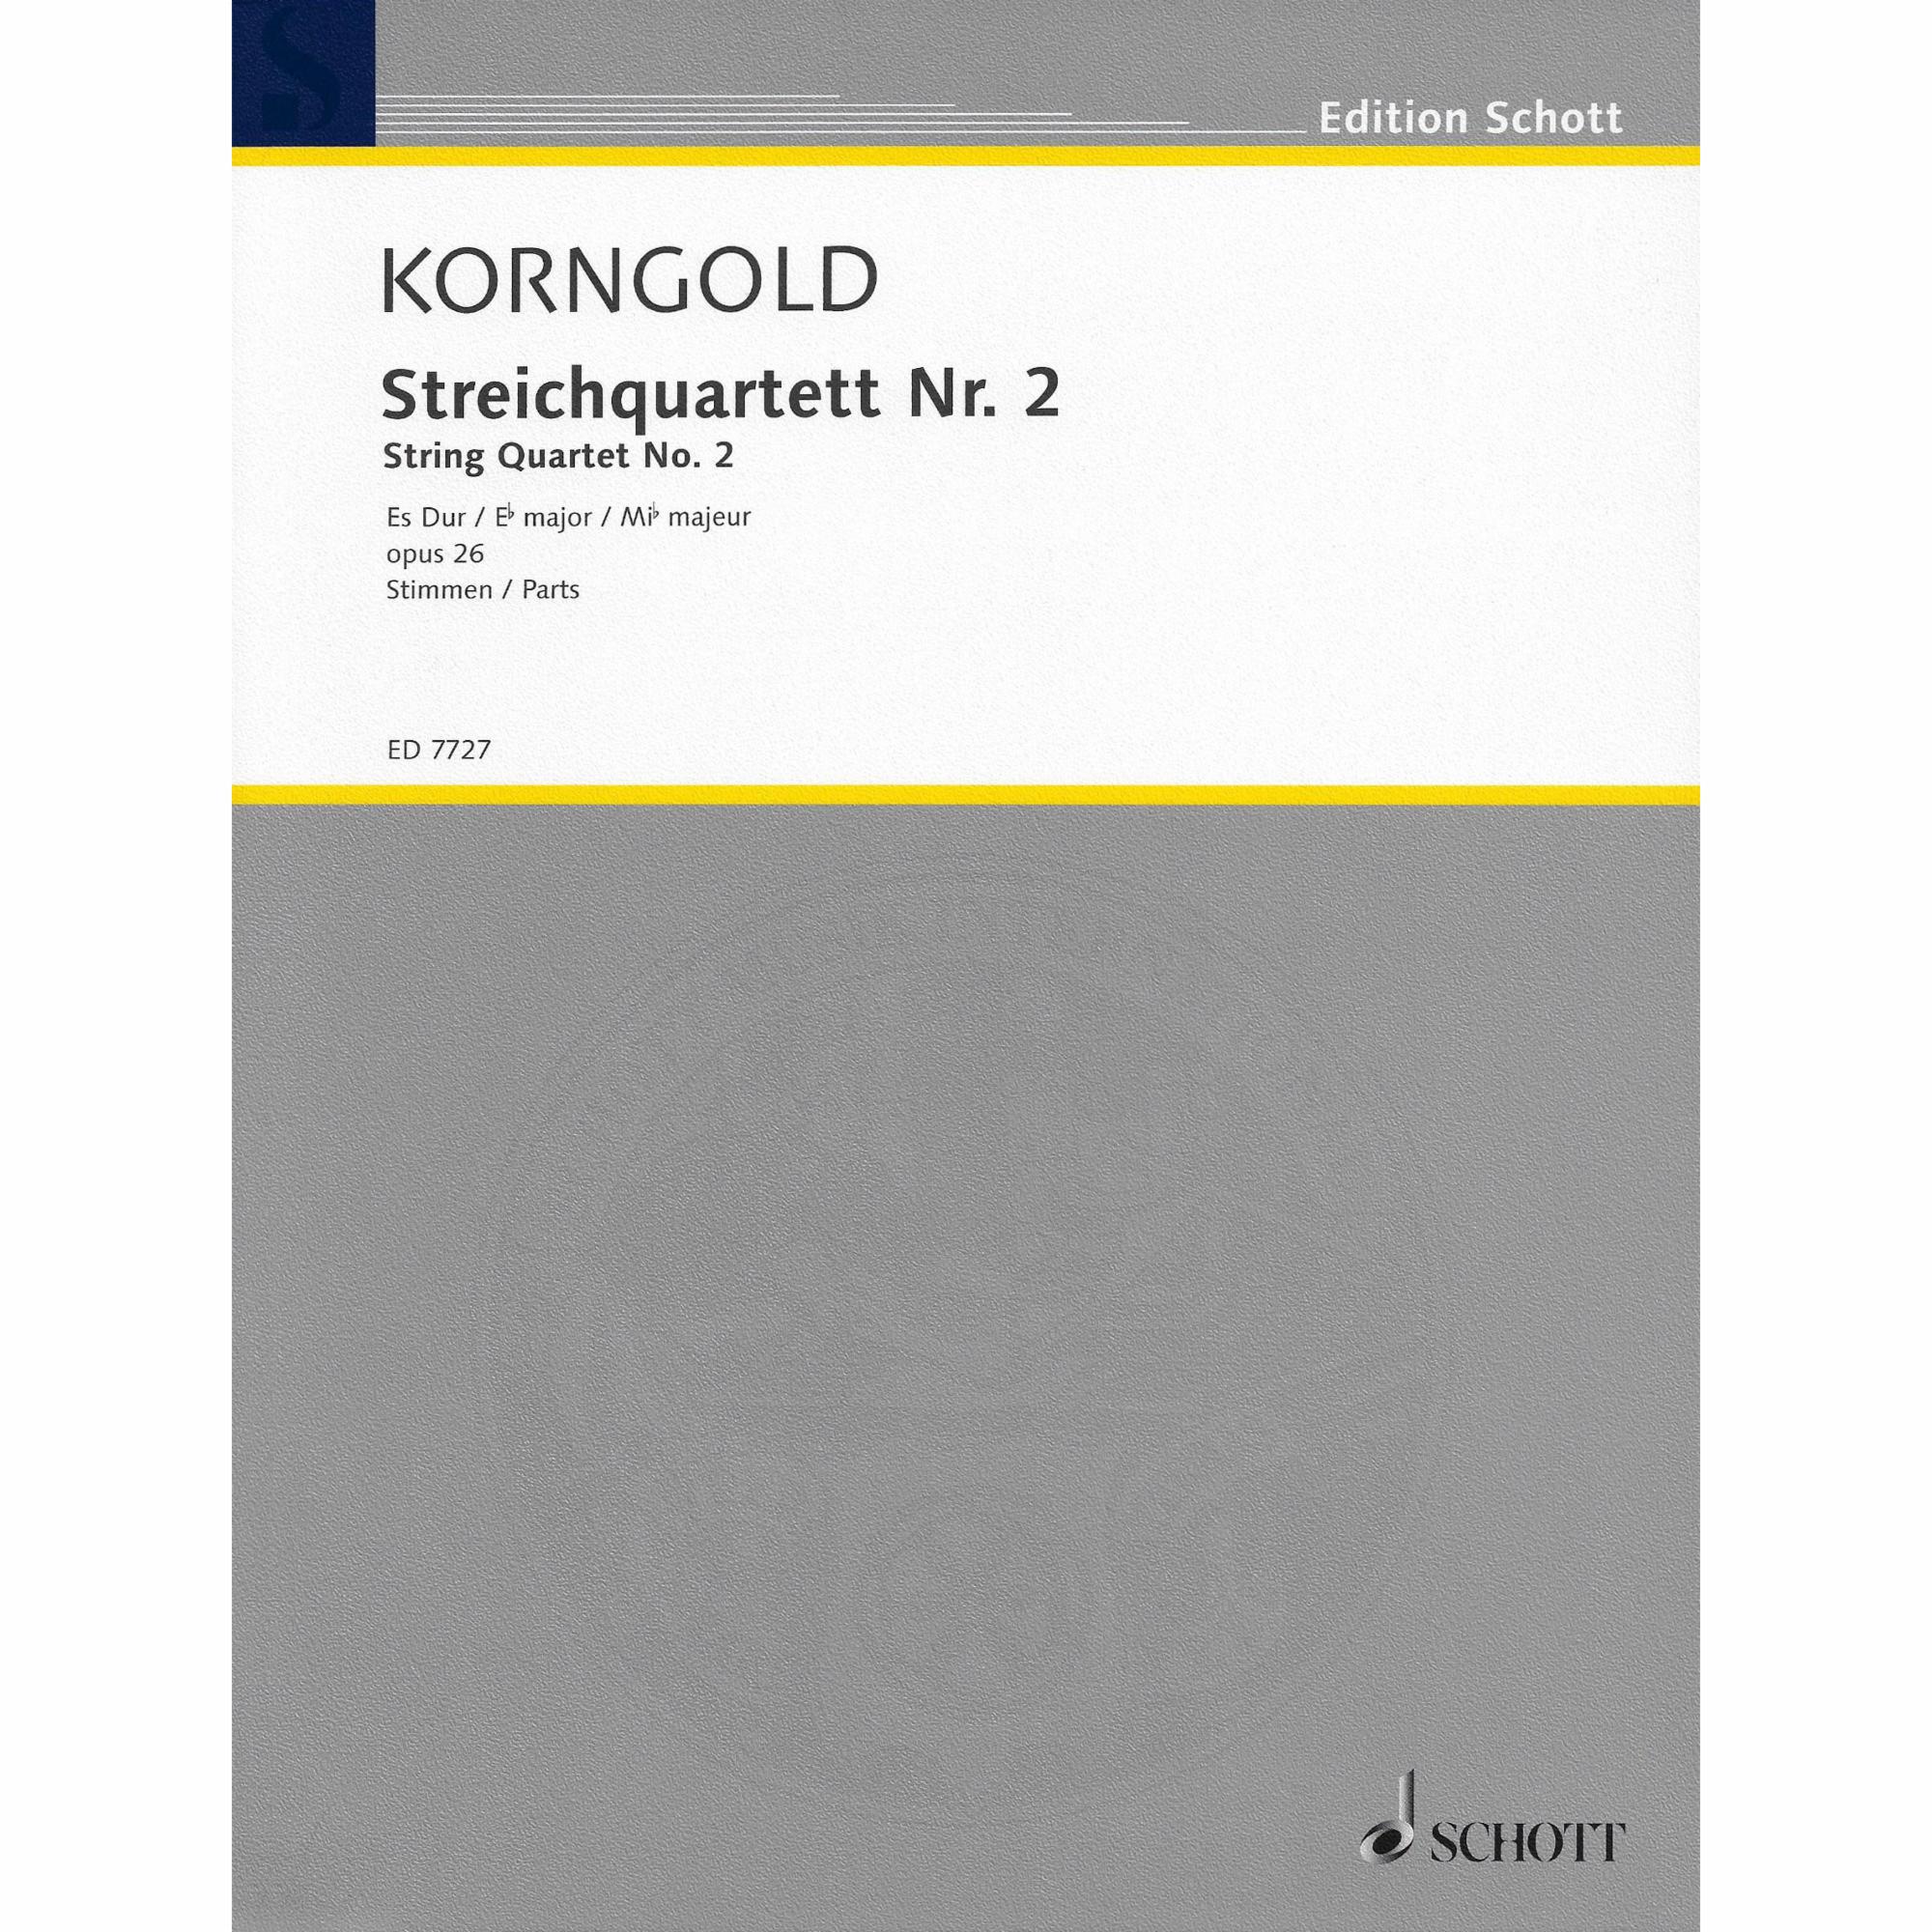 Korngold -- String Quartet No. 2 in E-flat Major, Op. 26